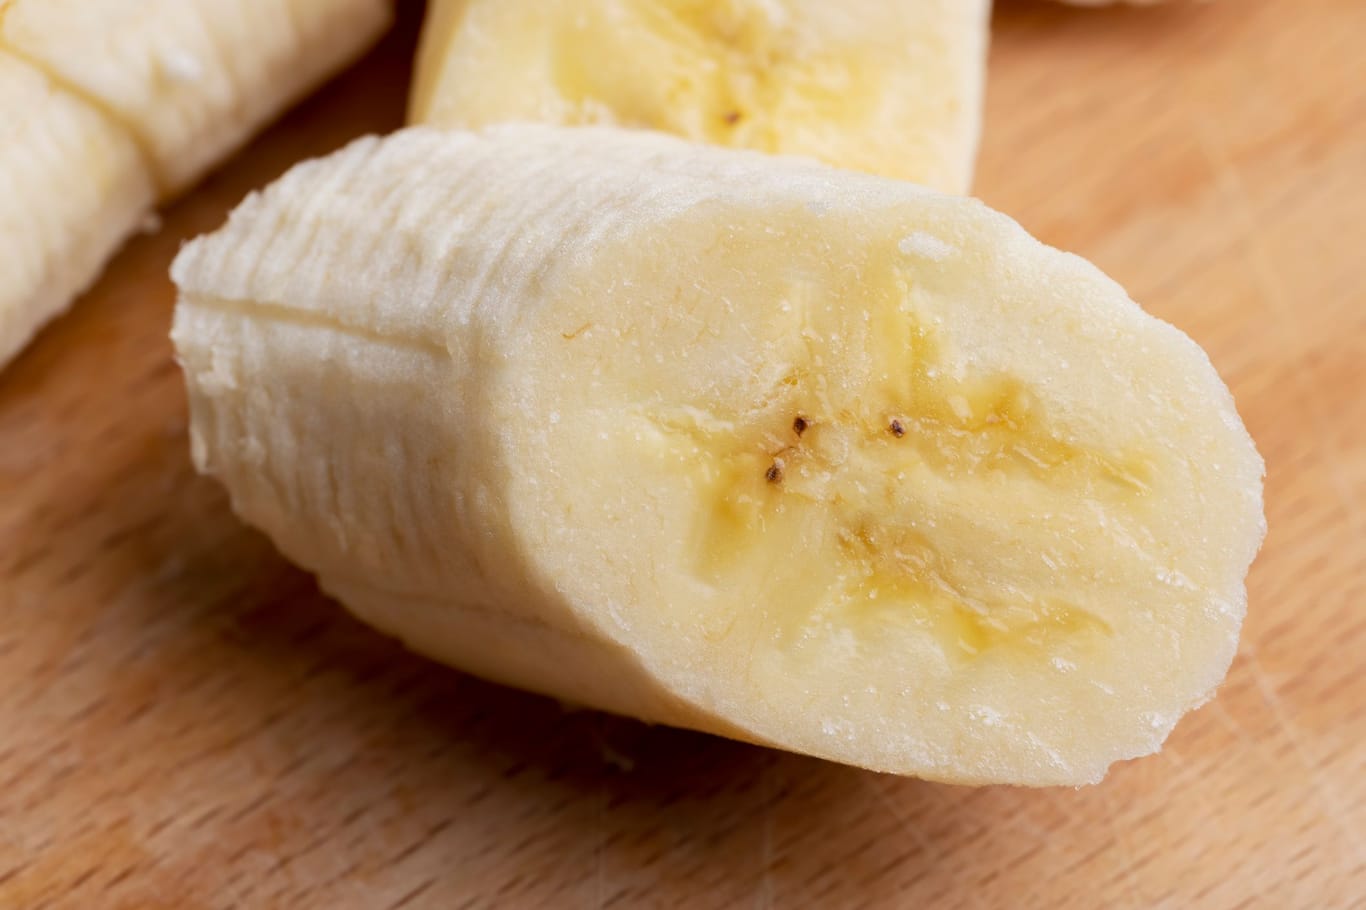 Geschnittene Banane: Die kleinen braunen Punkte in der Banane können mitgegessen werden.